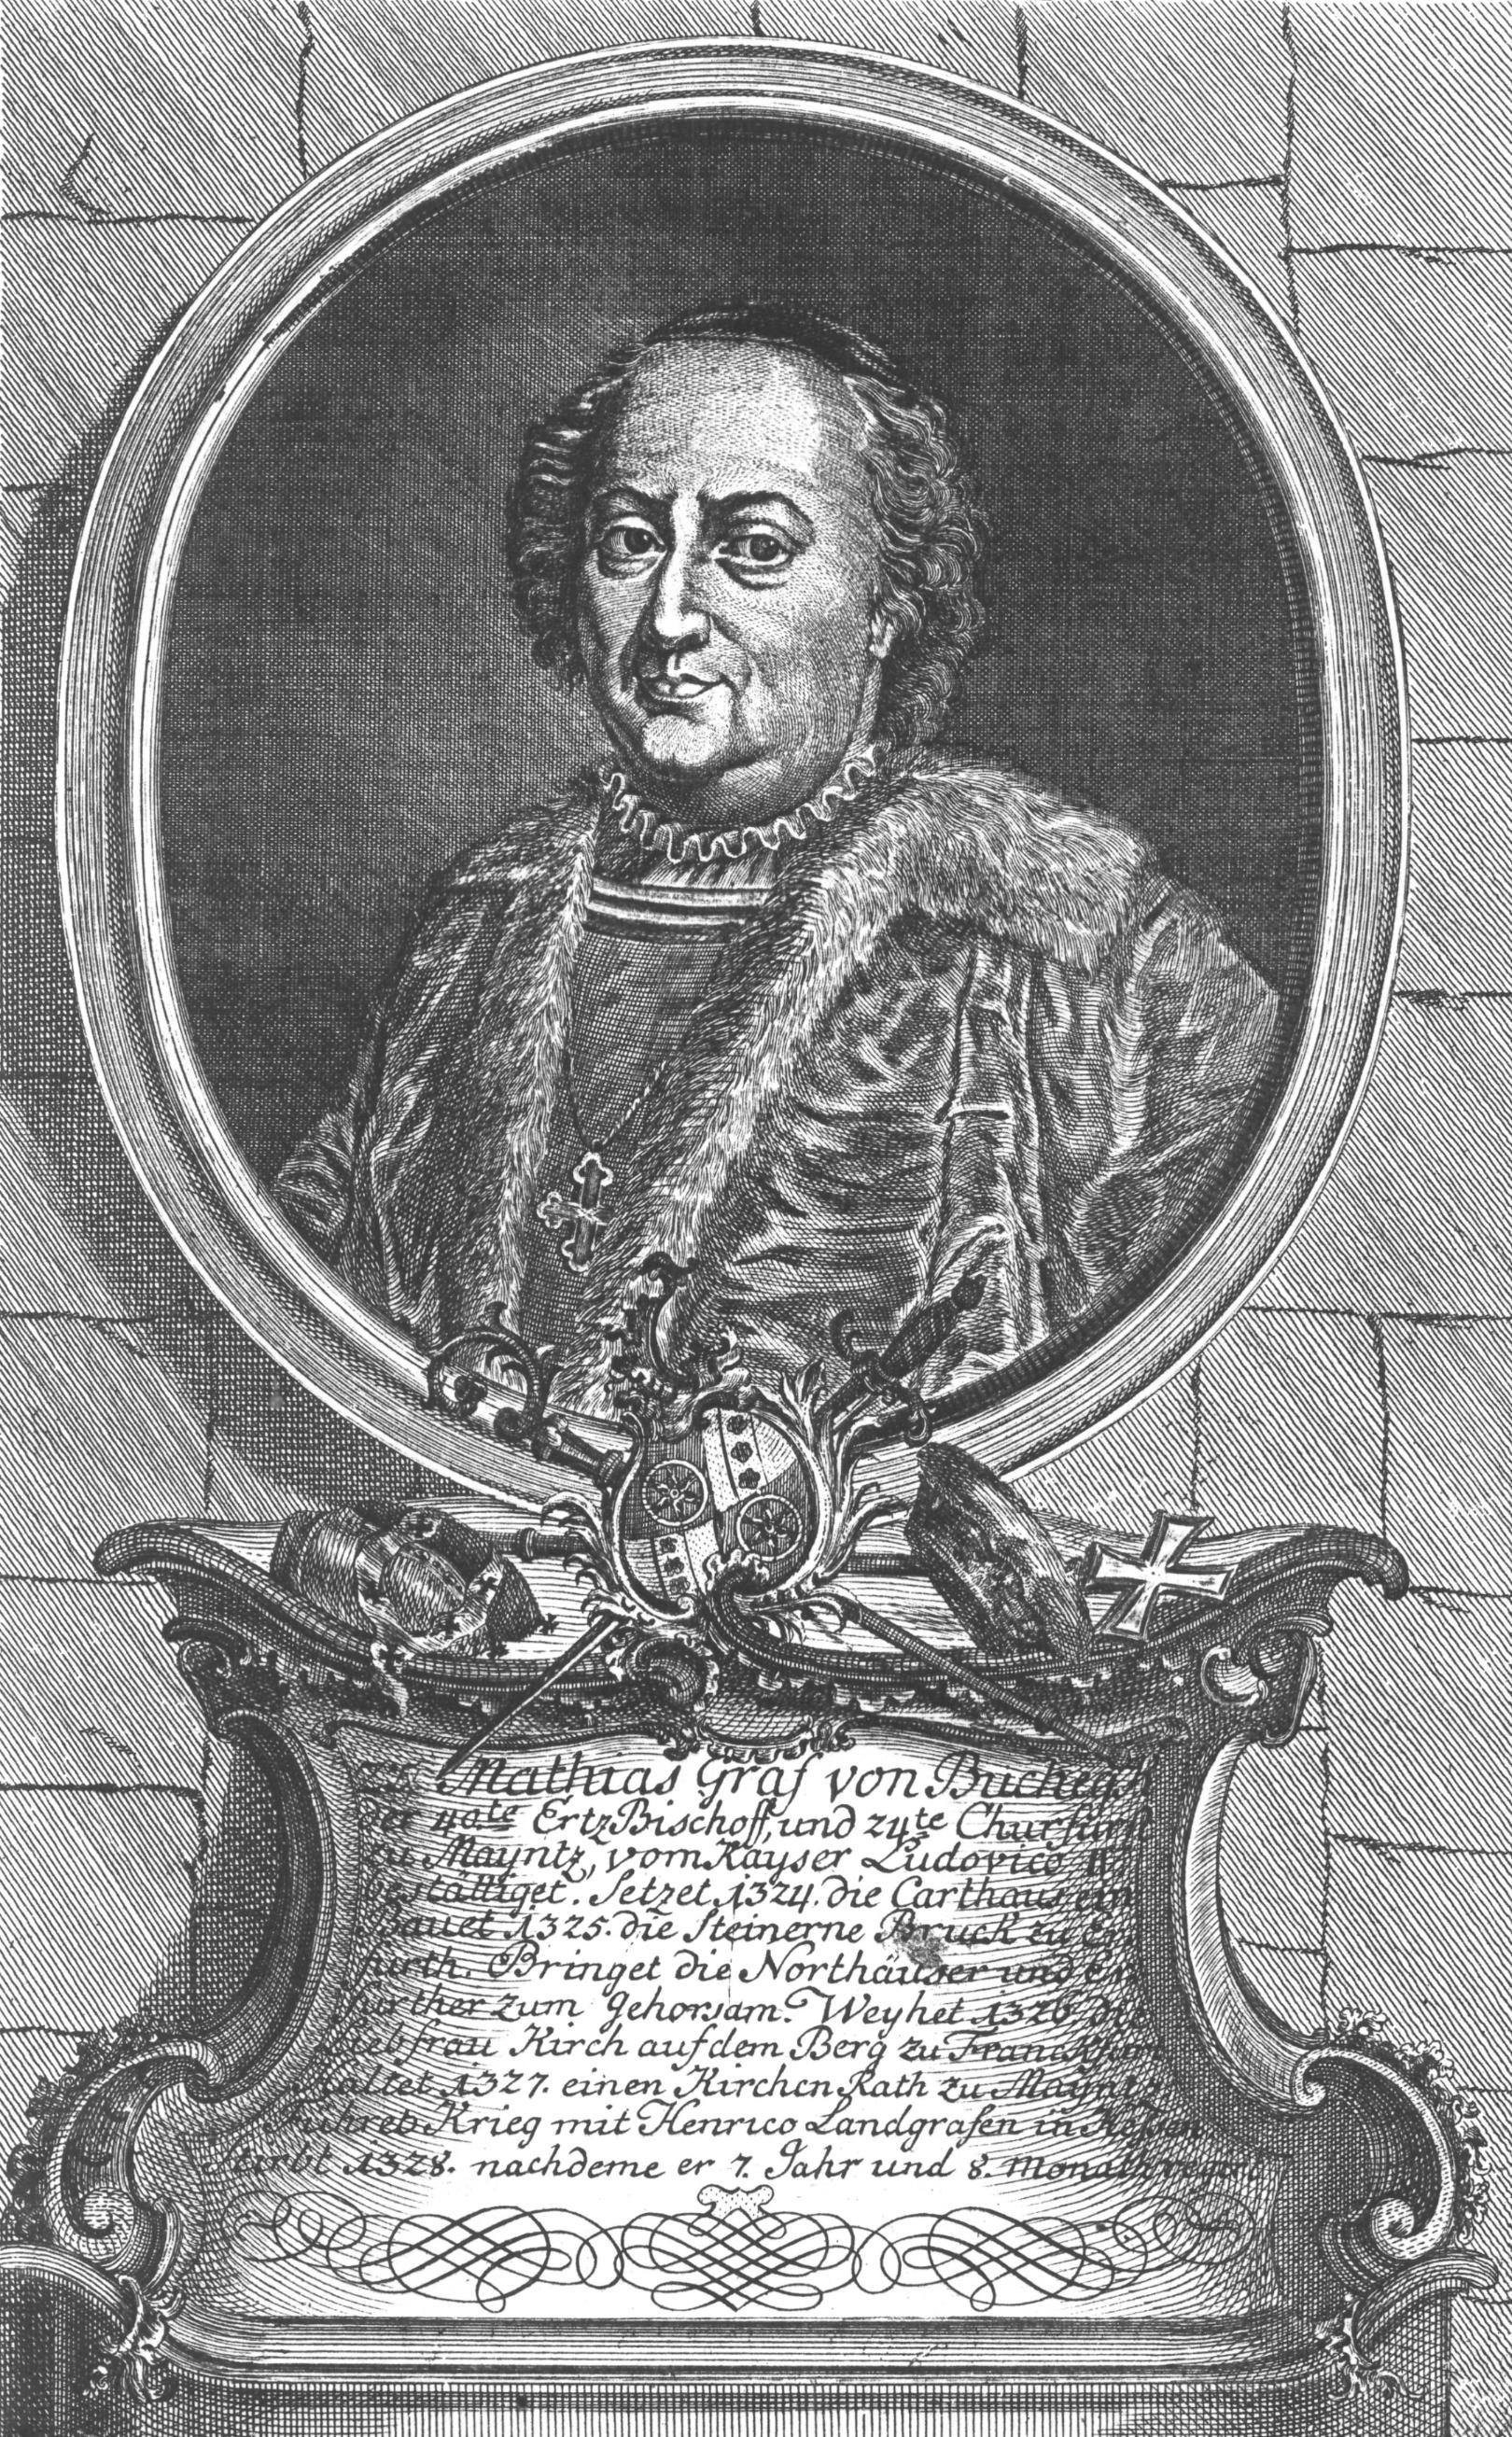 Matthias von Buchegg, gezeichnet von Wilhelm Christian Rücker, ca. 1774 (c) Wilhelm Christian Rücker / IMKG